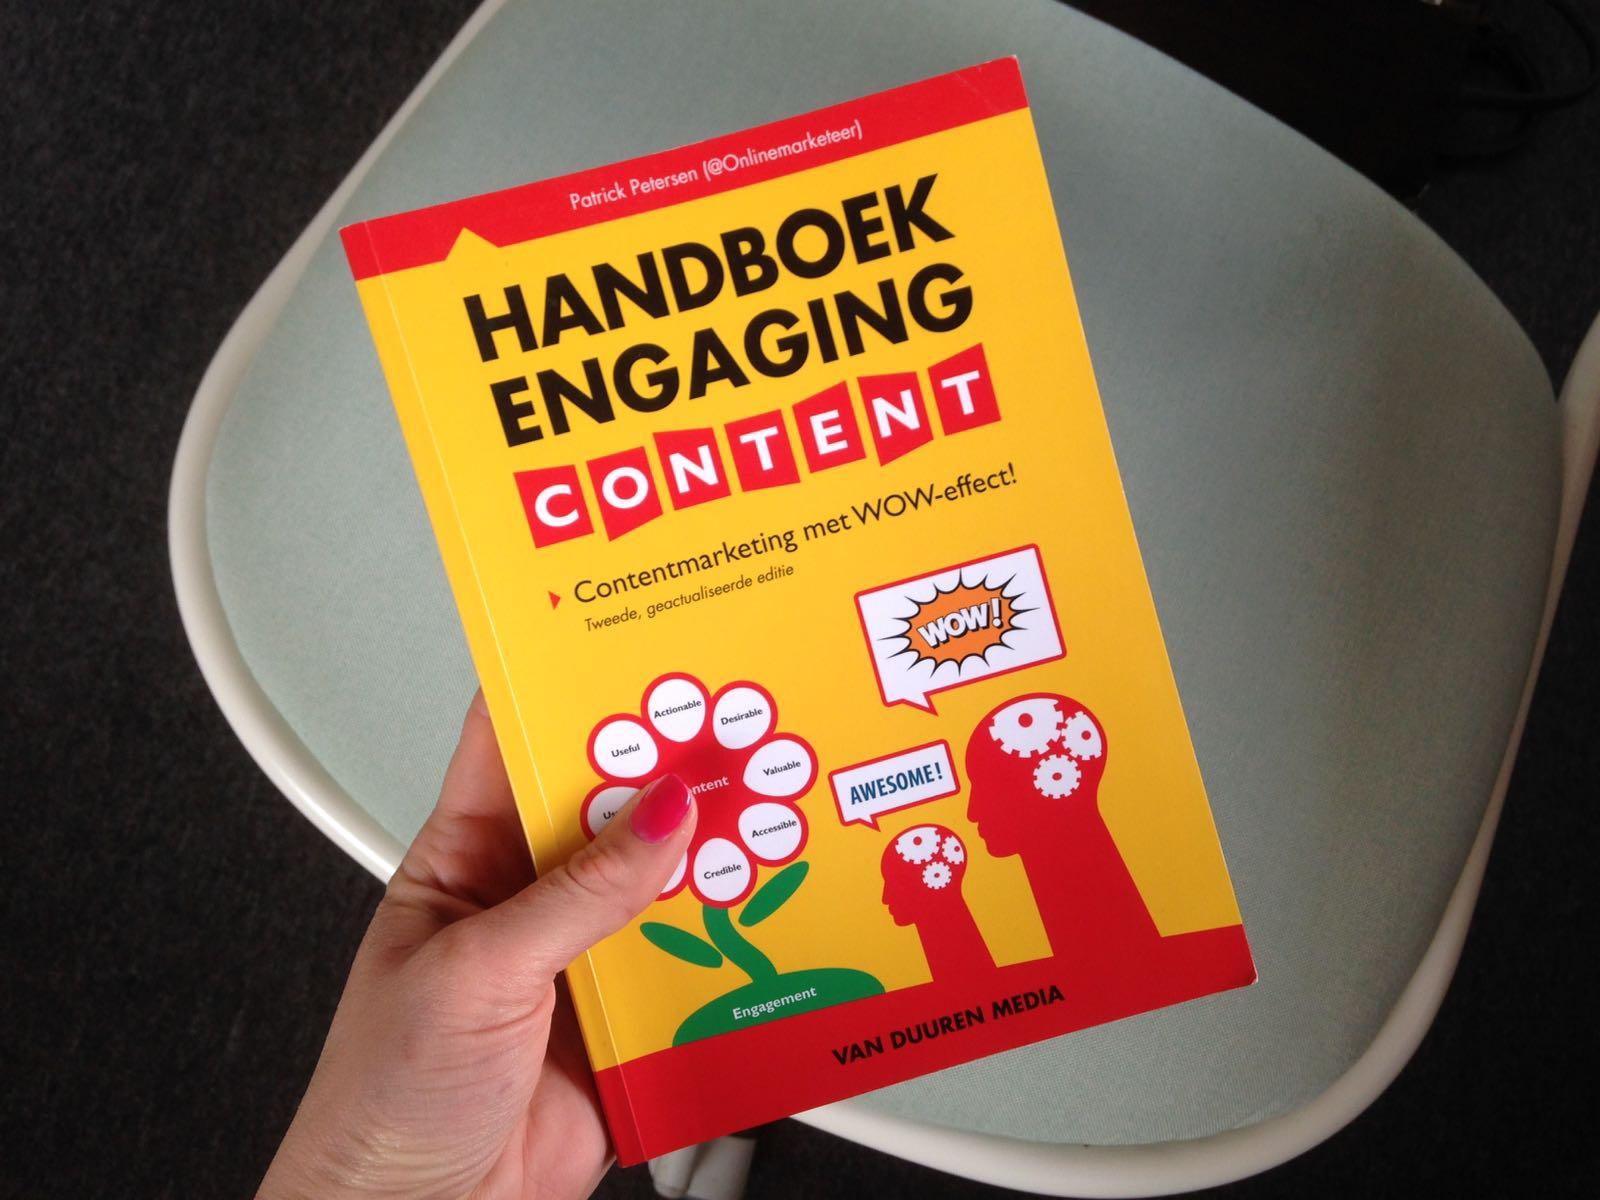 Handboek engaging content